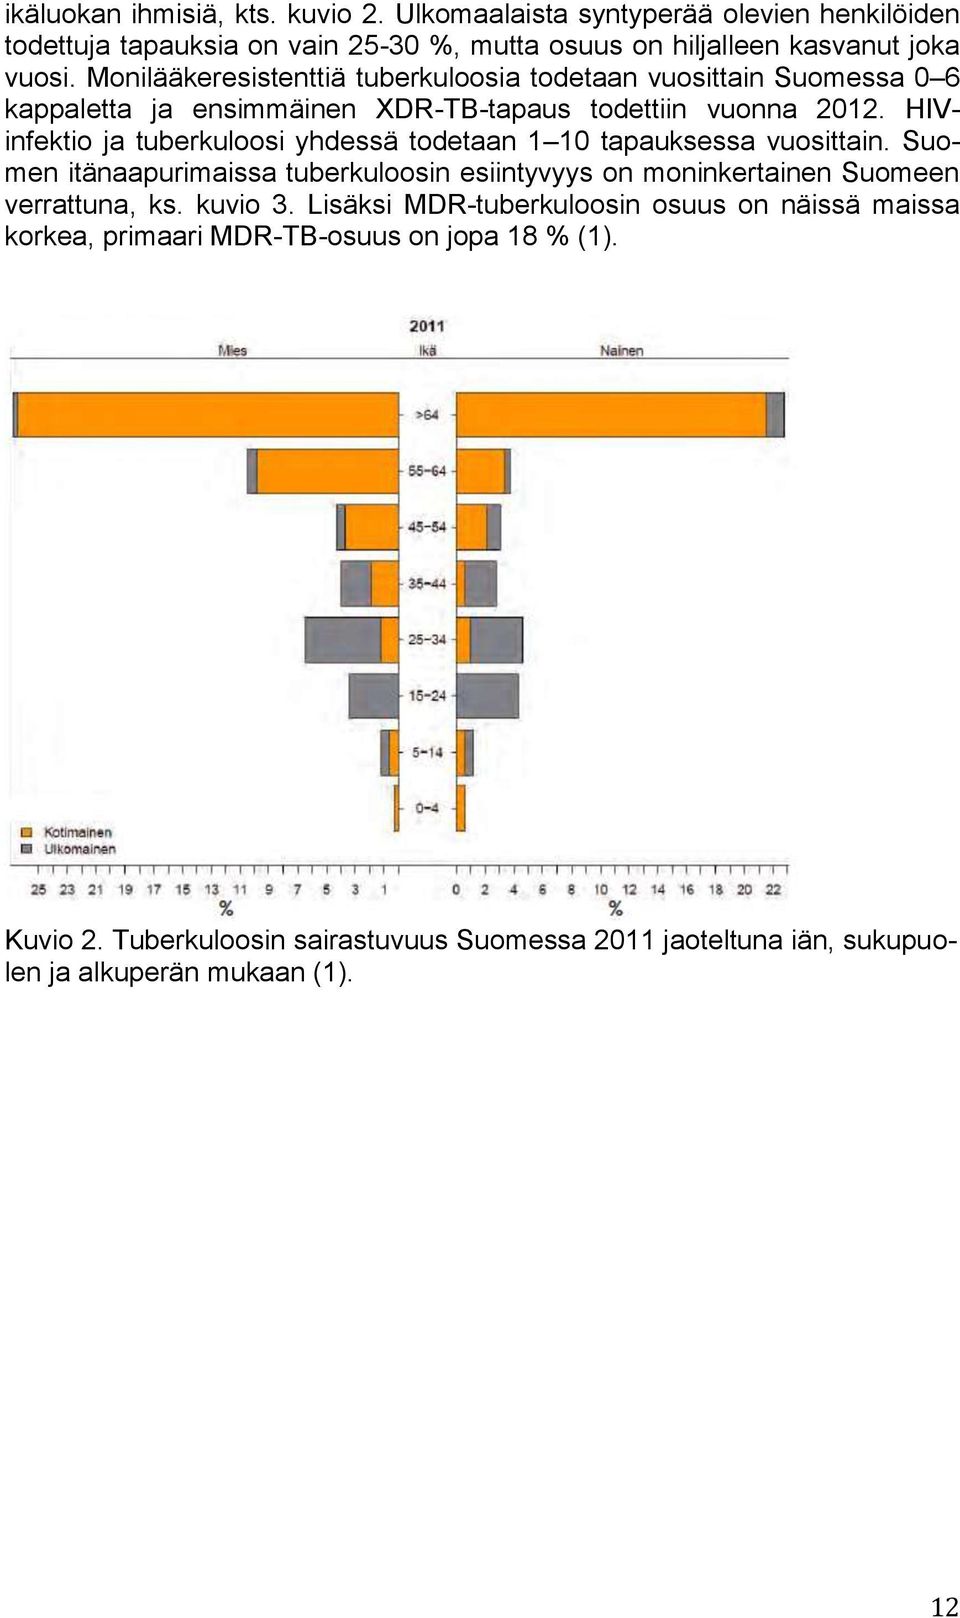 HIVinfektio ja tuberkuloosi yhdessä todetaan 1 10 tapauksessa vuosittain. Suomen itänaapurimaissa tuberkuloosin esiintyvyys on moninkertainen Suomeen verrattuna, ks.